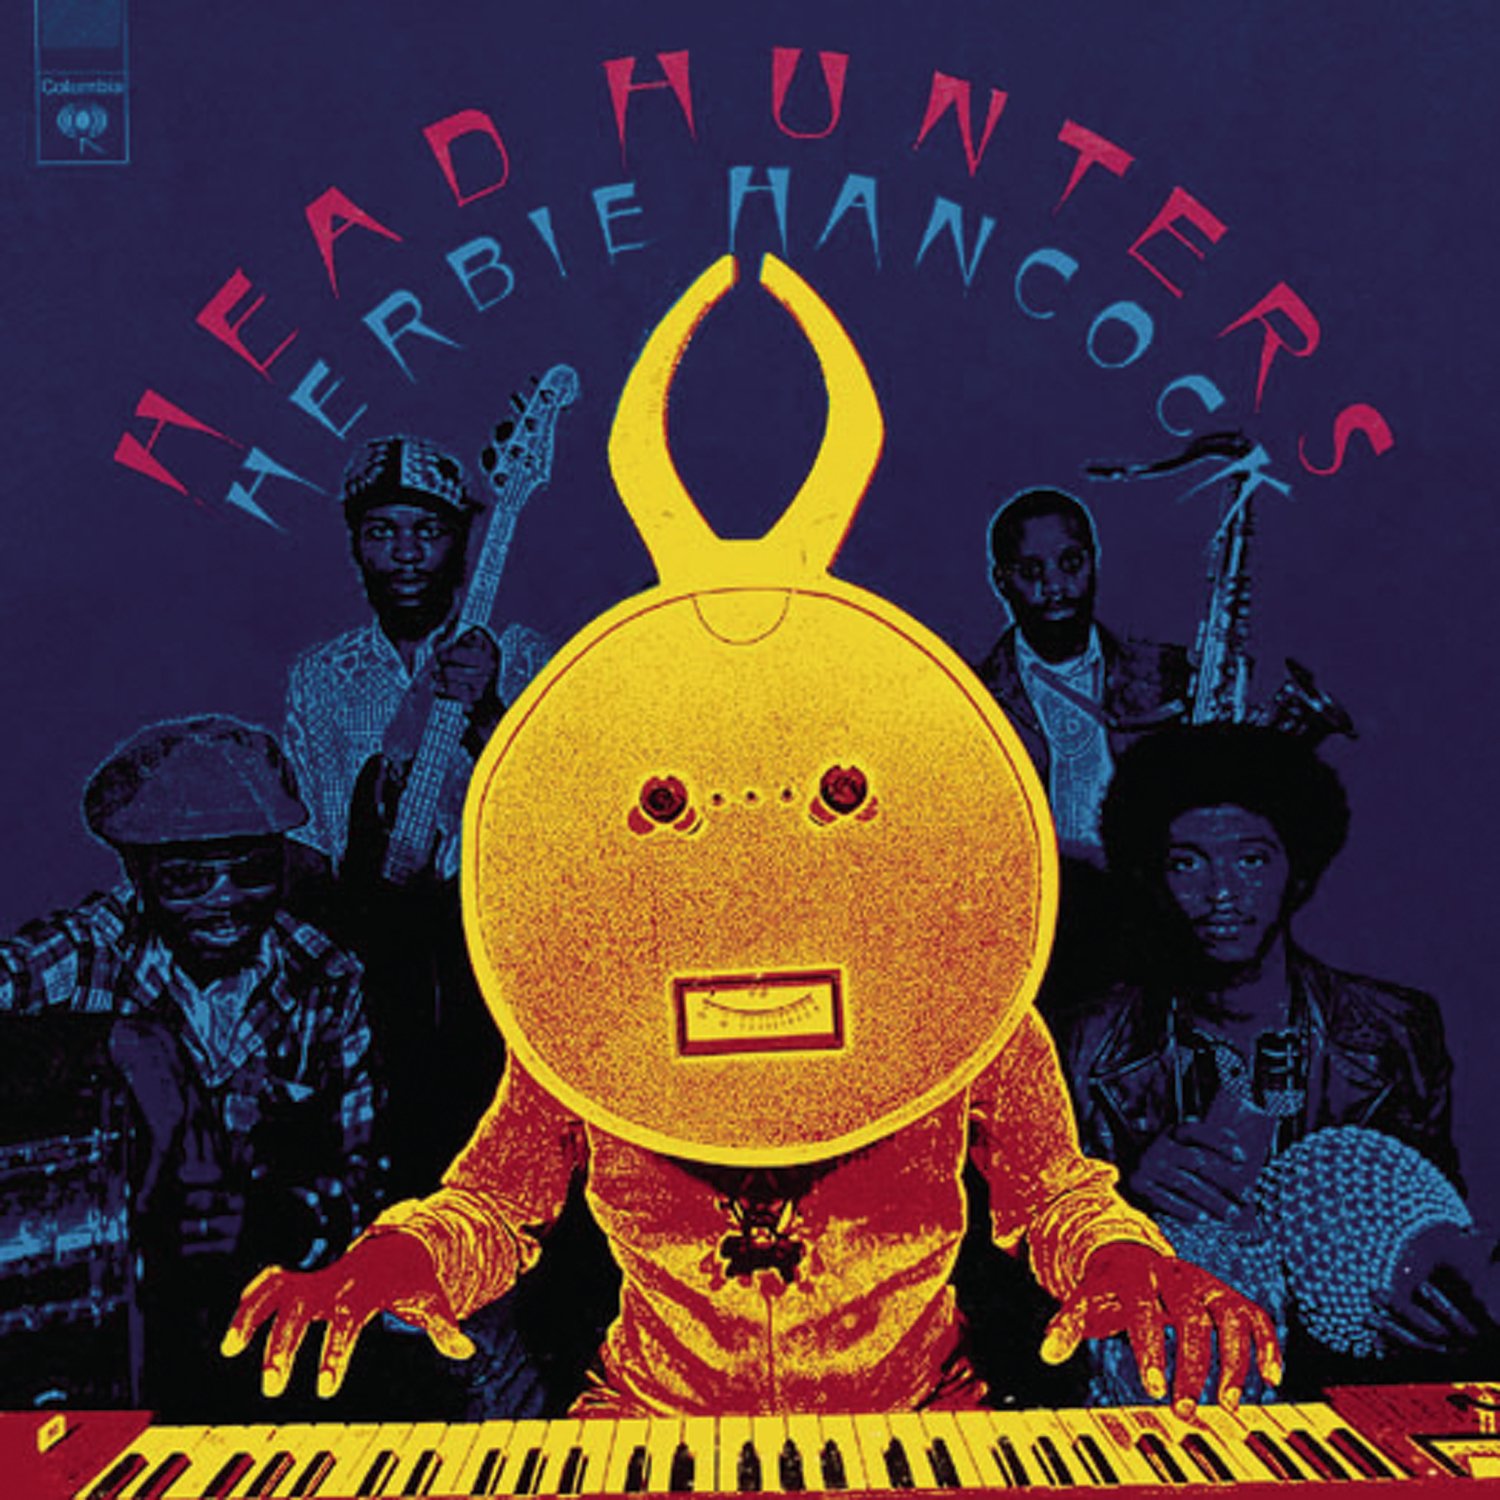 Herbie Hancock "Headhunters" LP